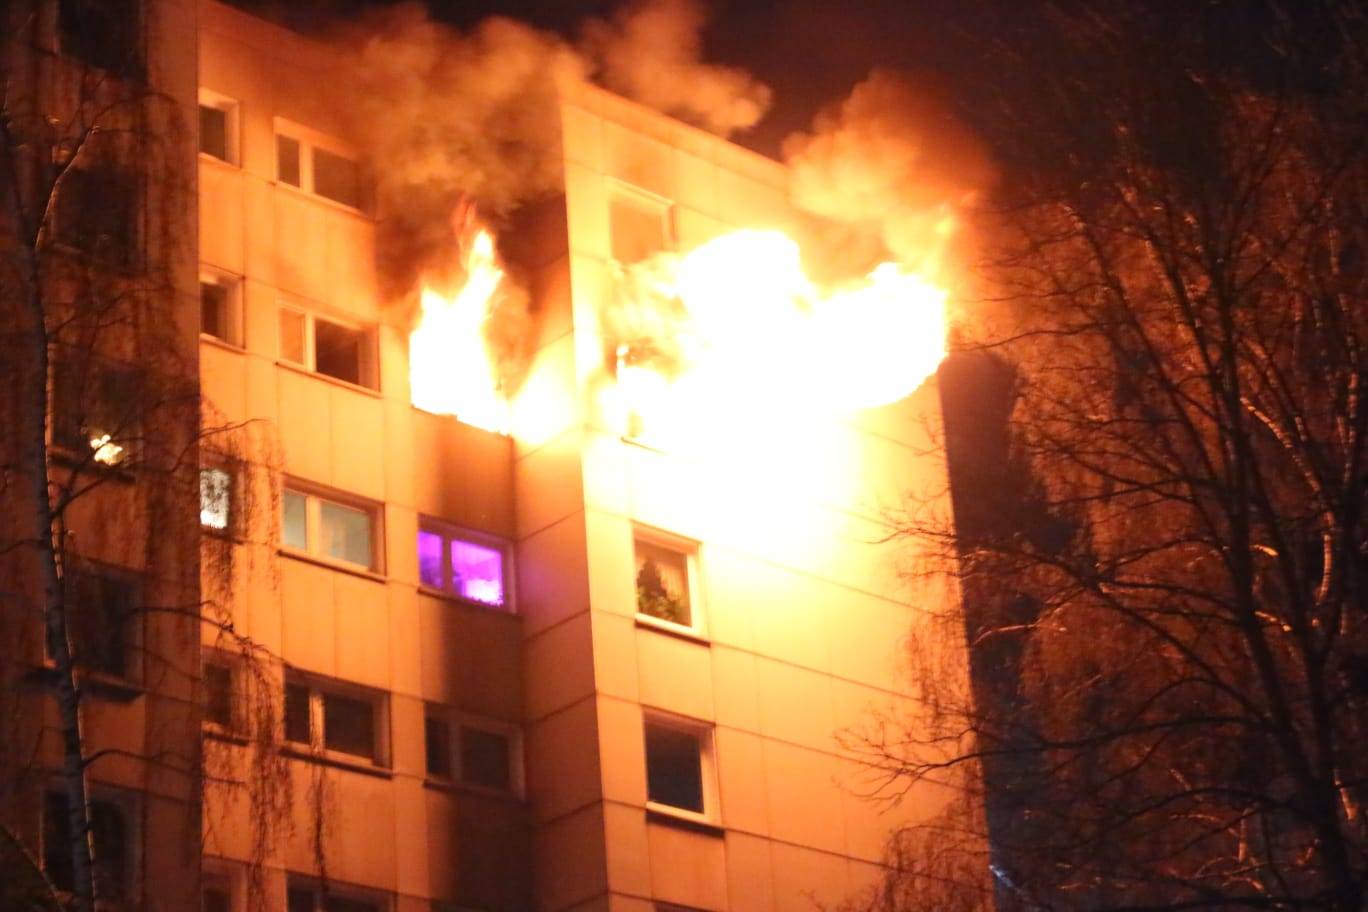 UPDATE: Großeinsatz wegen Brand in Elberfelder Hochhaus